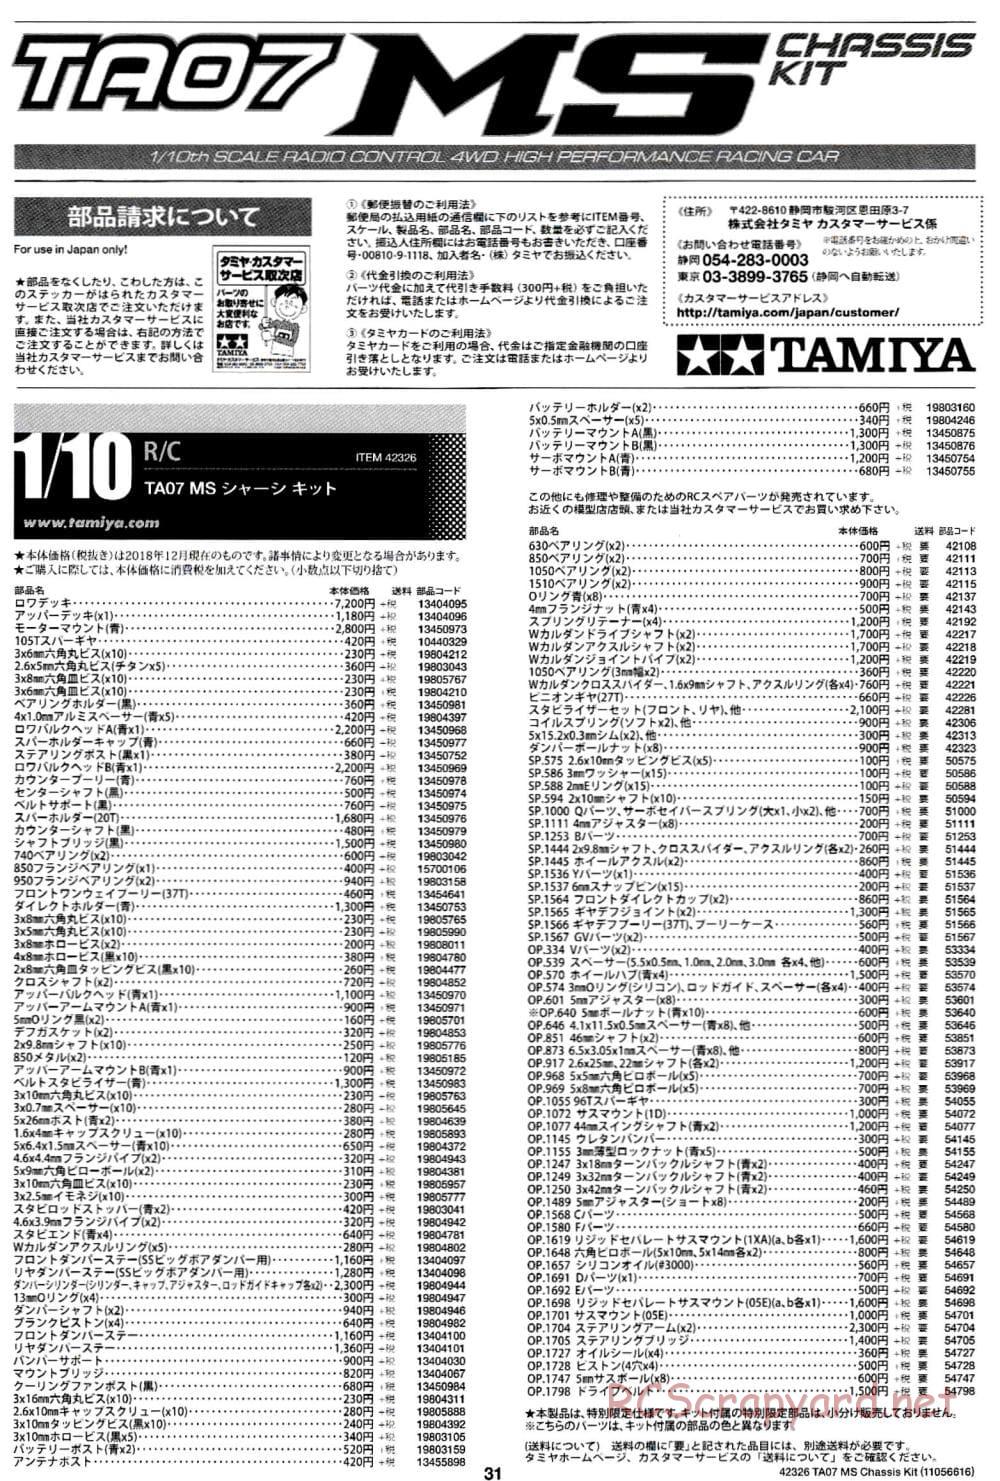 Tamiya - TA07 MS Chassis - Manual - Page 31